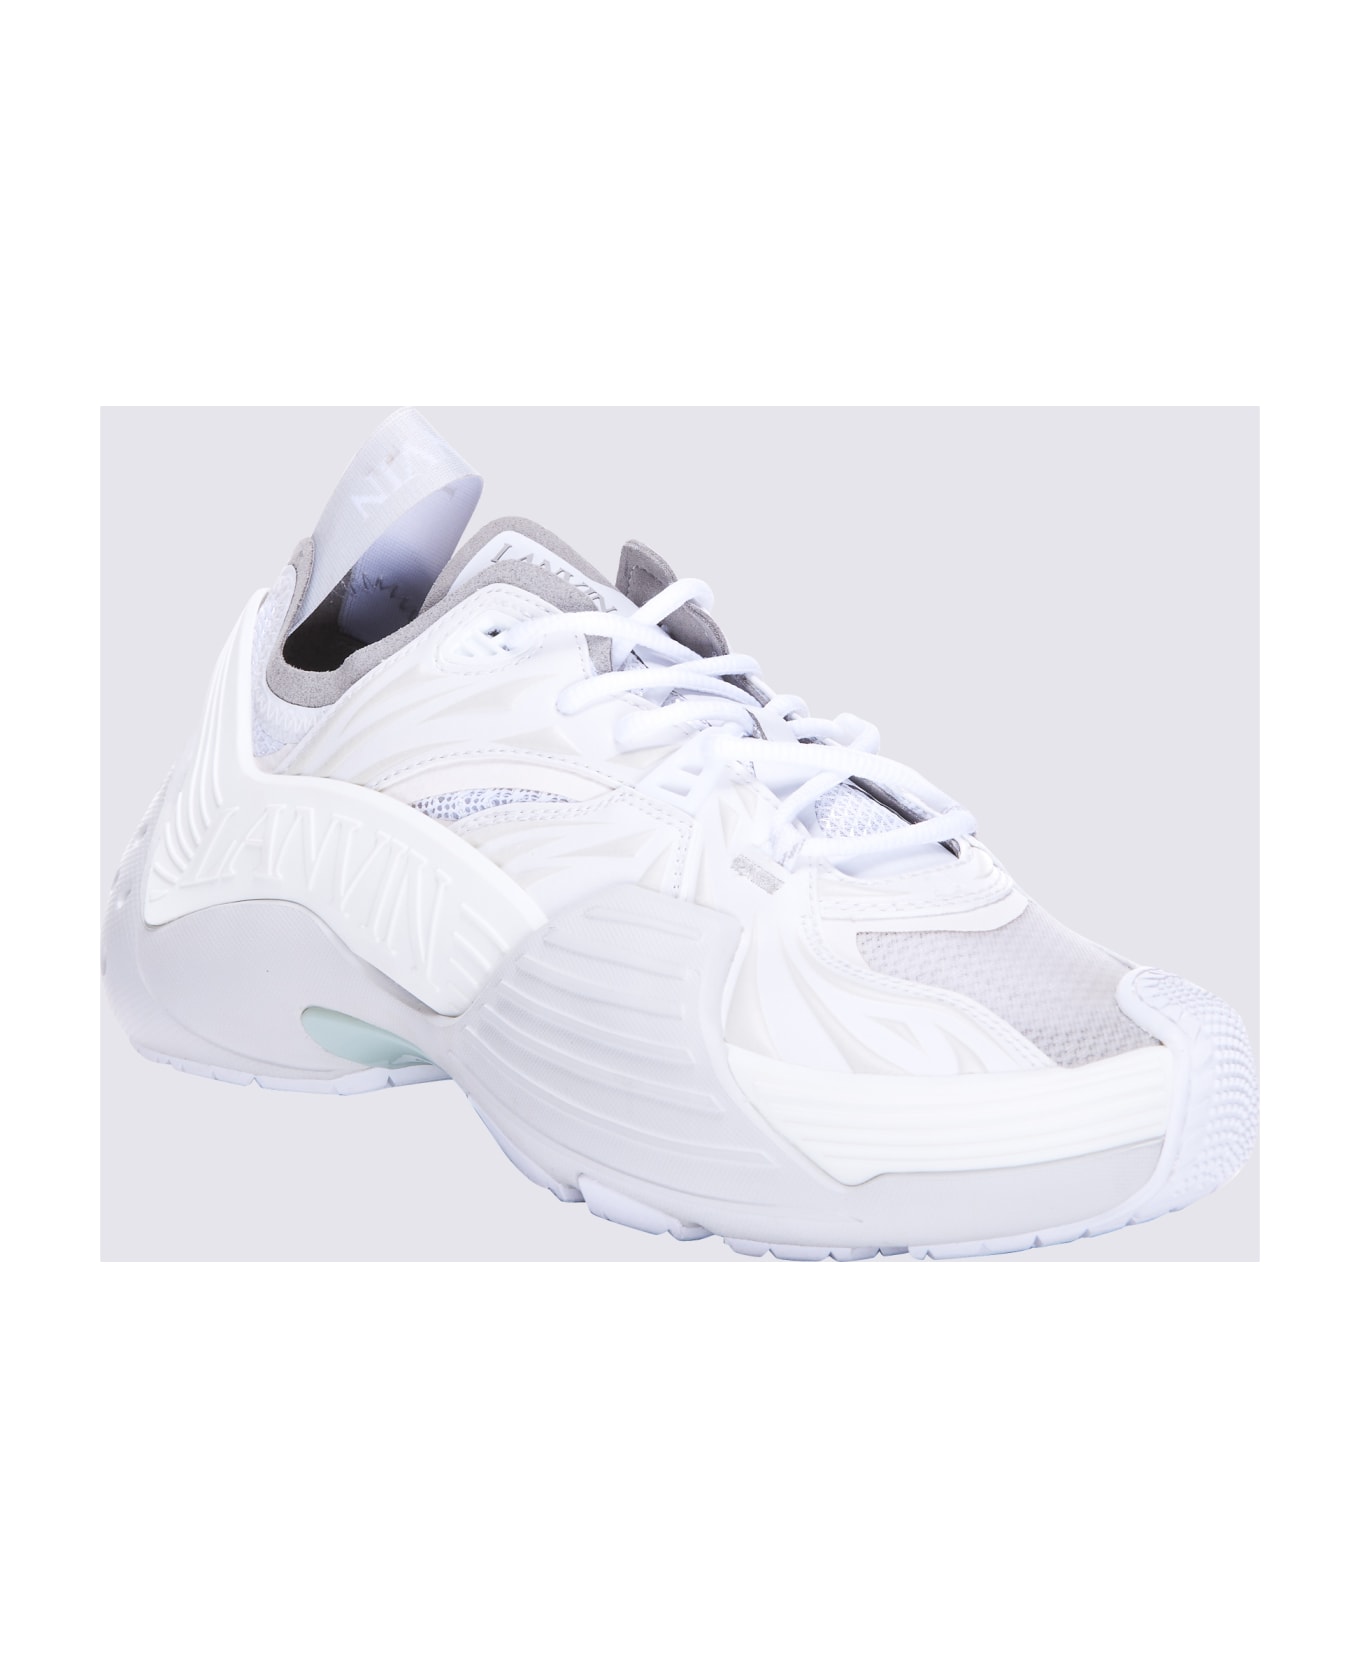 Lanvin White Mesh Flash-x Sneakers - White